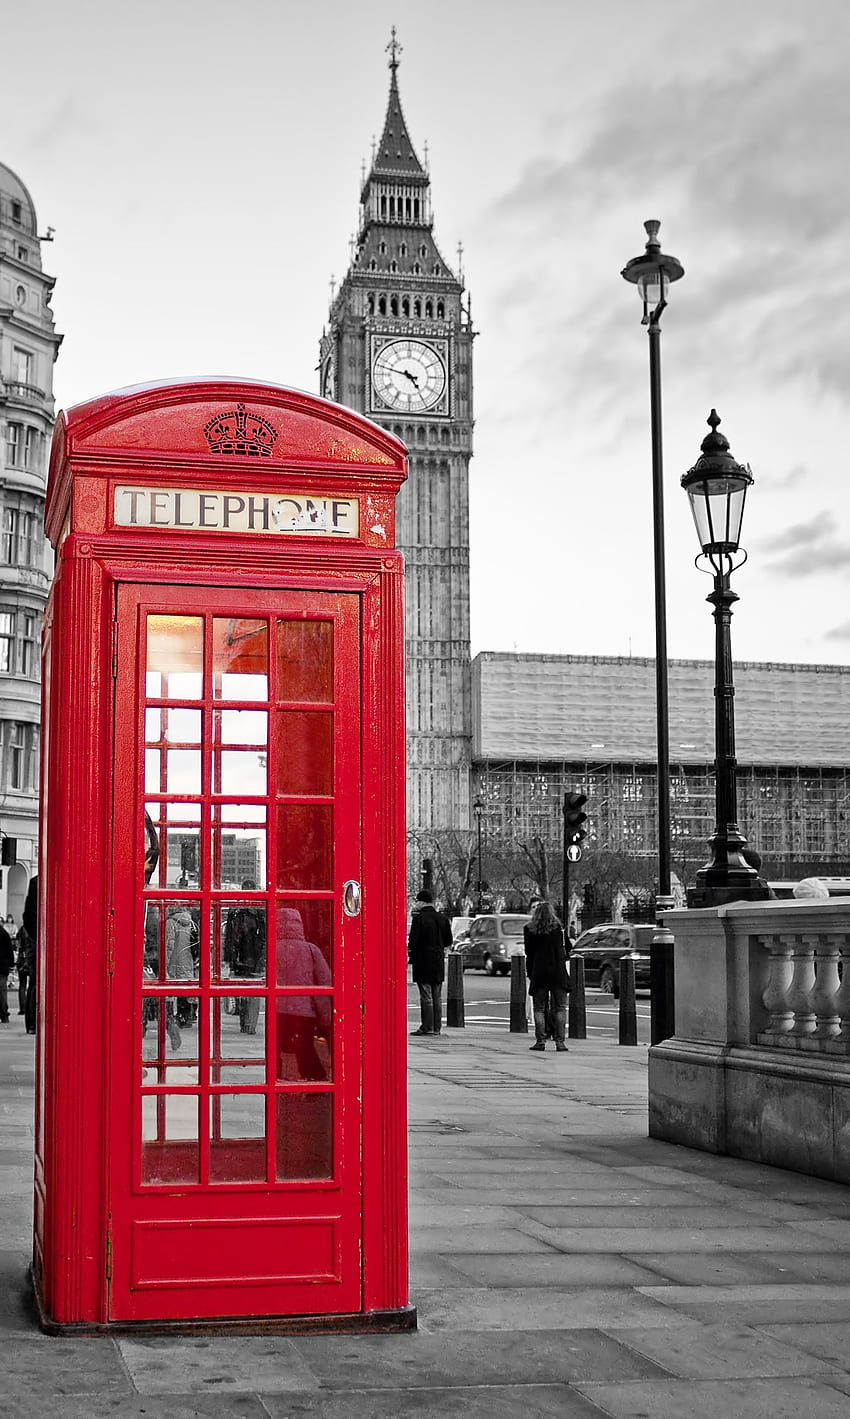 Una cabina de teléfono roja tradicional en Londres con el Big - Teléfono de Londres - -, invierno de Londres fondo de pantalla del teléfono